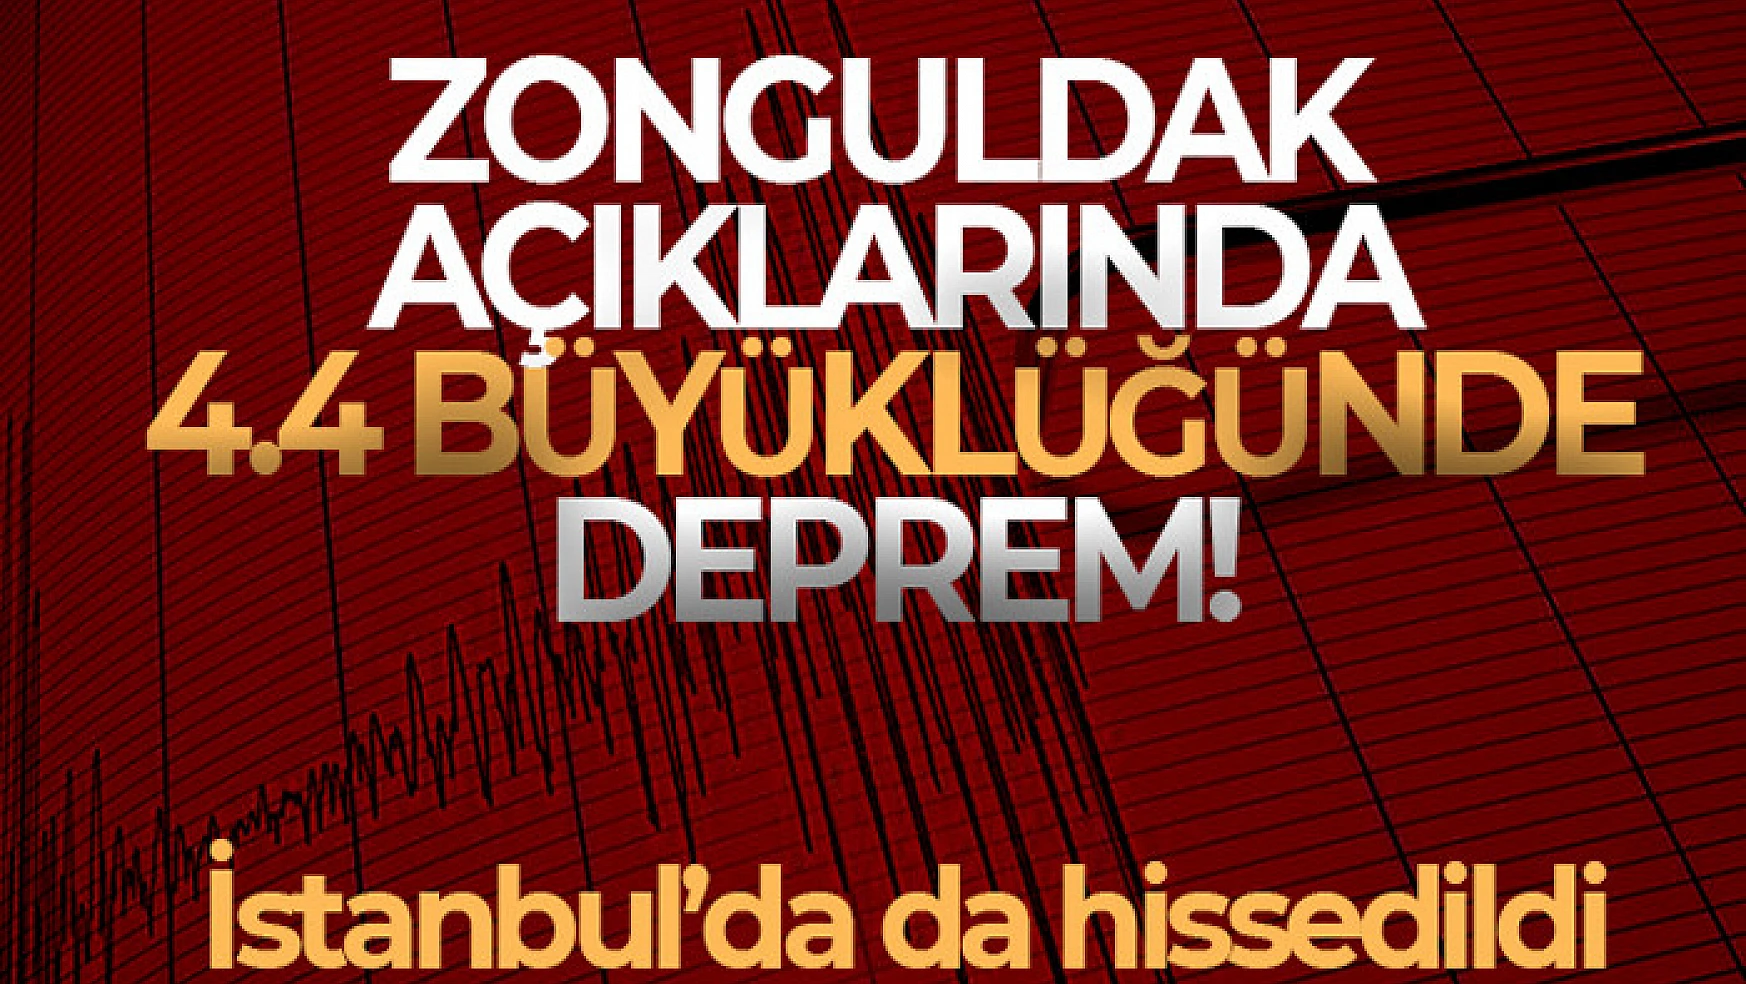 Zonguldak açıklarında 4.4 büyüklüğünde deprem